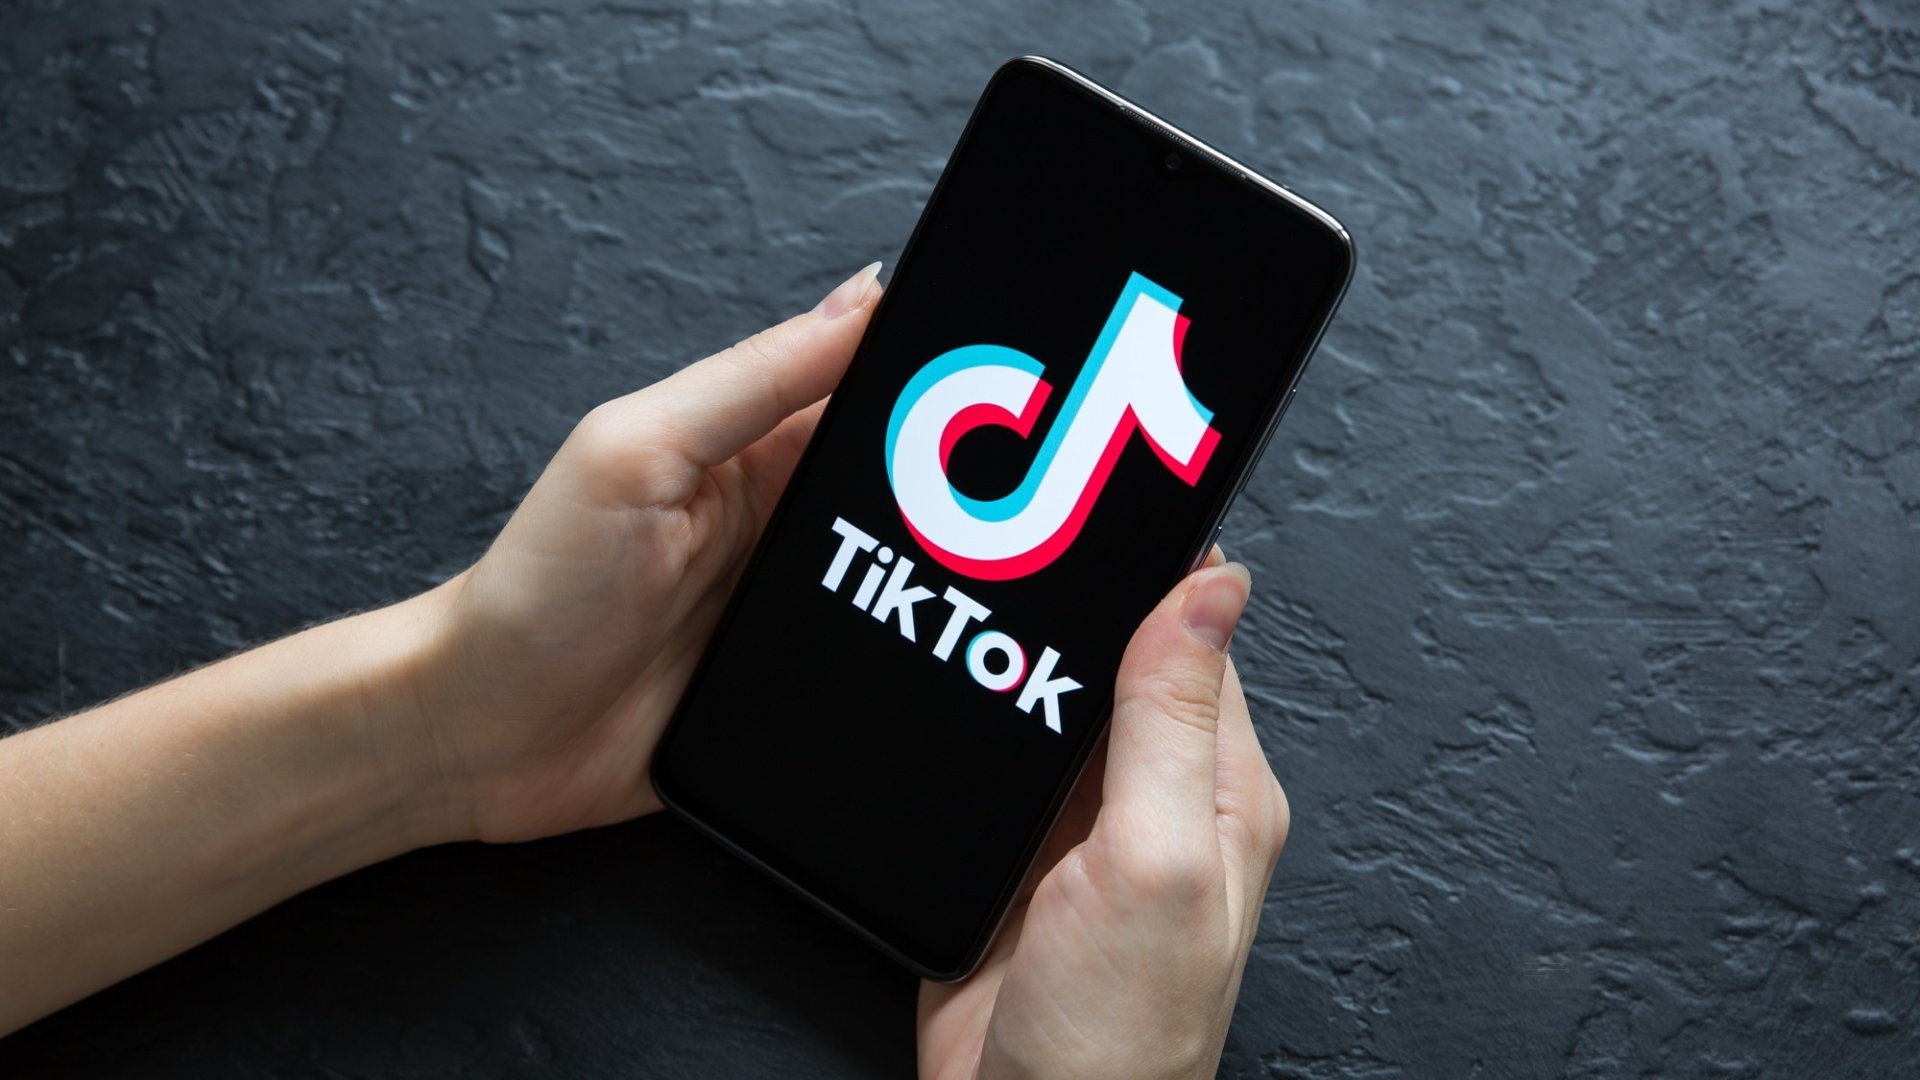 TikTok a ser usado em smartphone